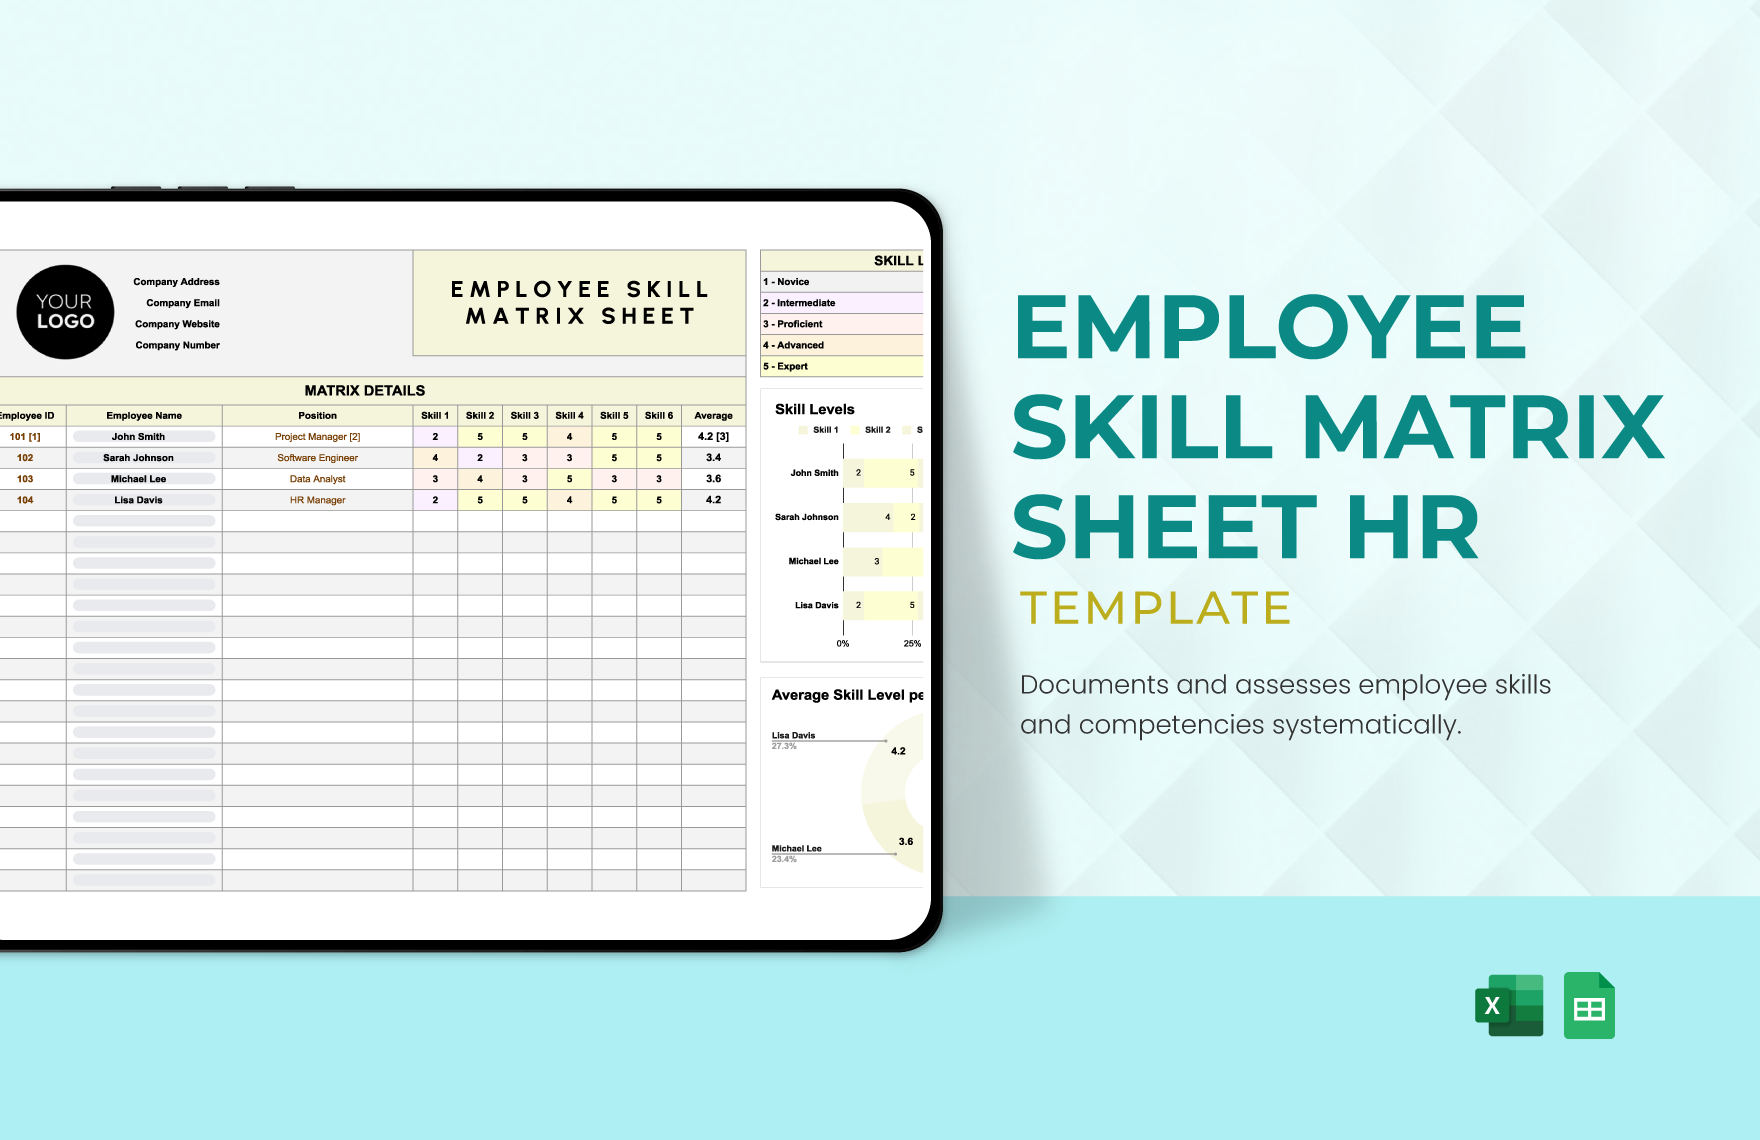 Employee Skill Matrix Sheet HR Template